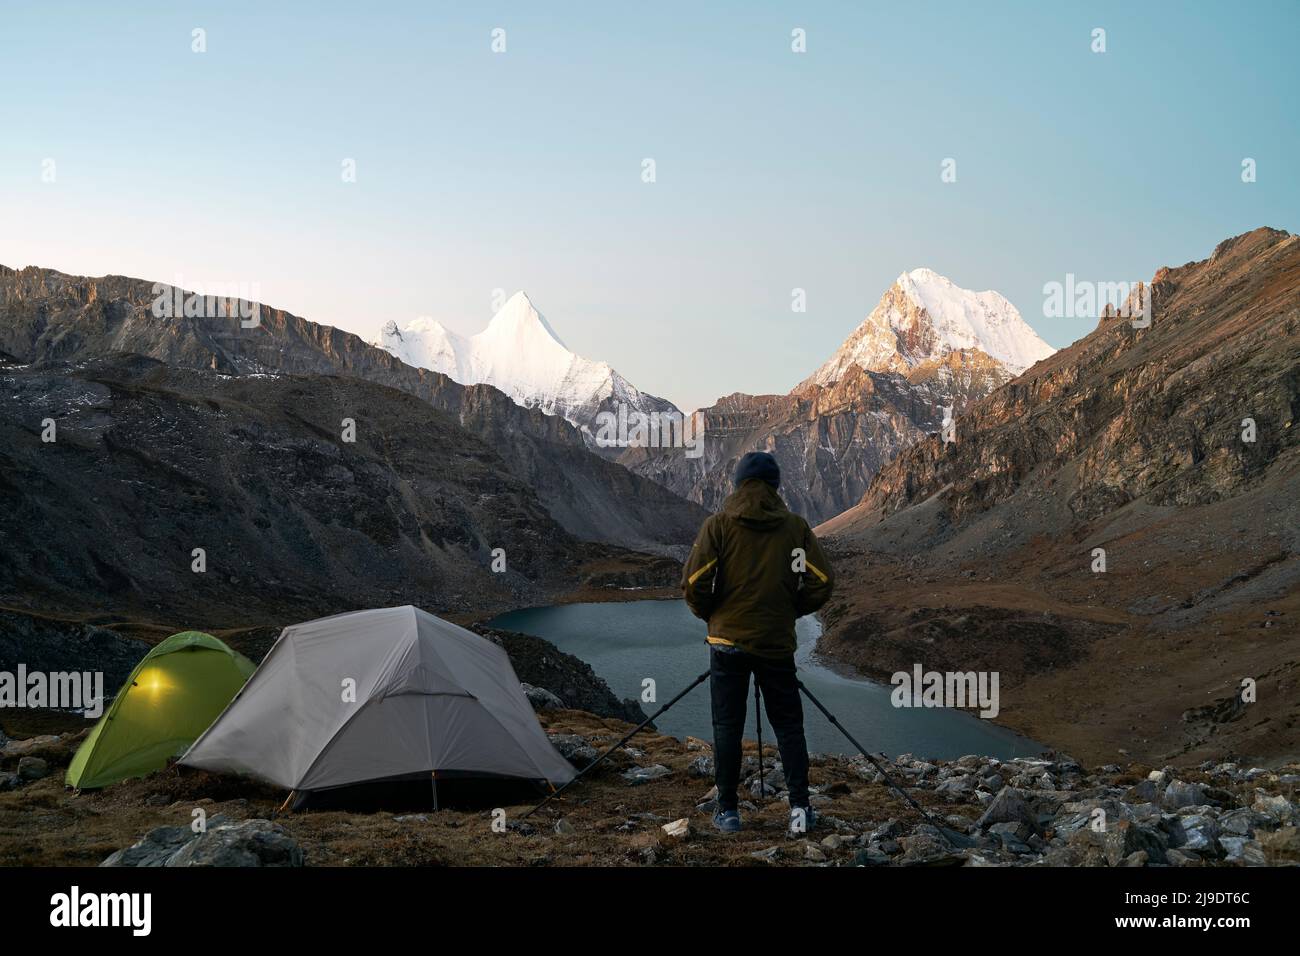 fotografo campeggiatore asiatico che fotografa la montagna e il lago nel parco nazionale, nella contea di daocheng, nella provincia di sichuan, in cina Foto Stock